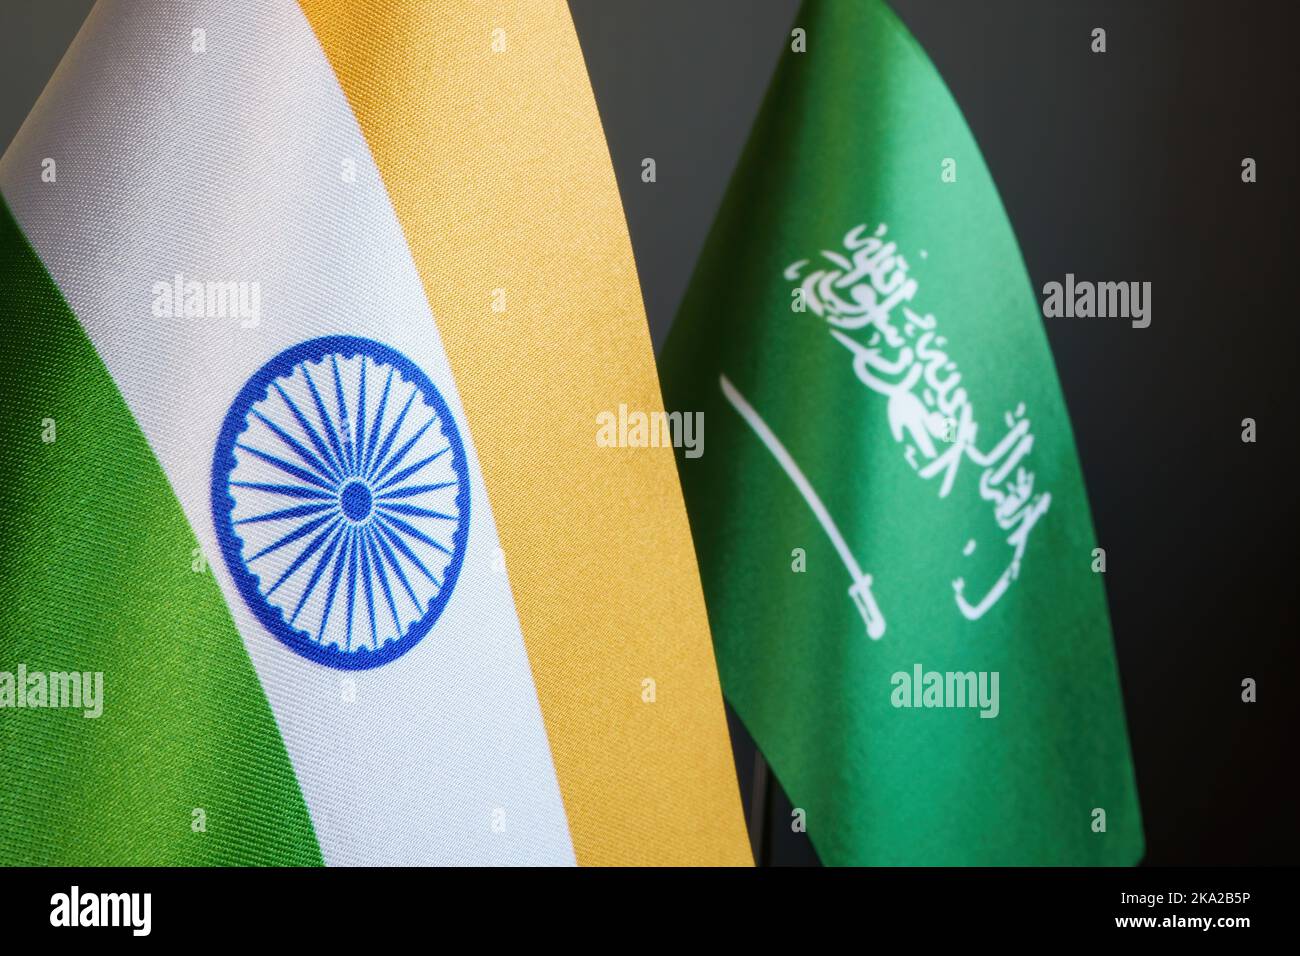 Banderas de la India y Arabia Saudita como símbolo de las relaciones diplomáticas. Foto de stock